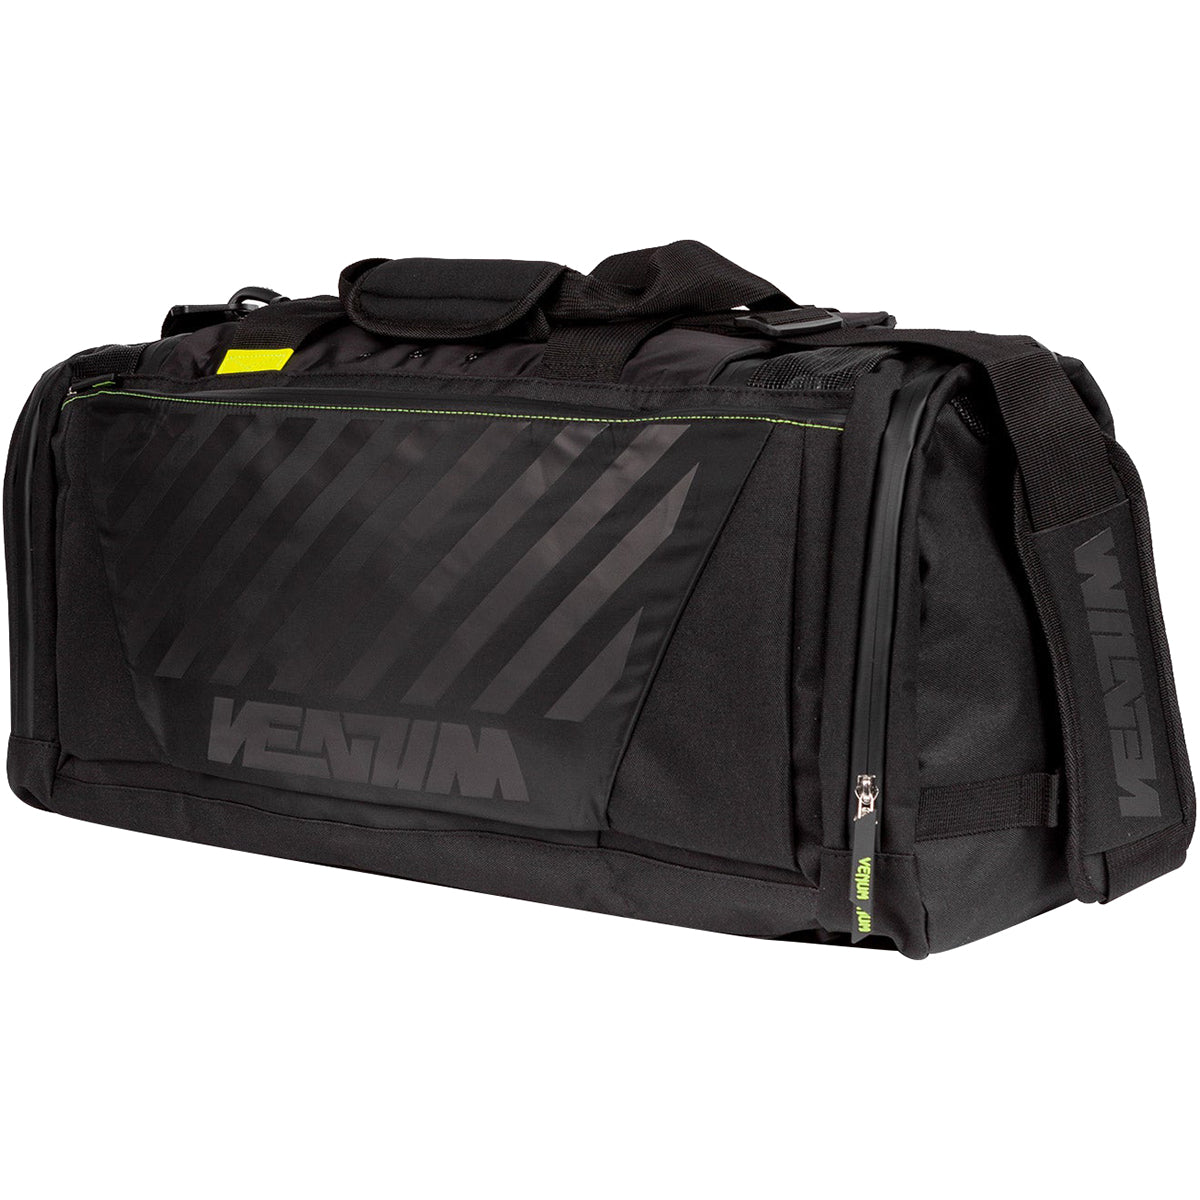 Venum Stripes Sports Duffel Bag - Black Venum